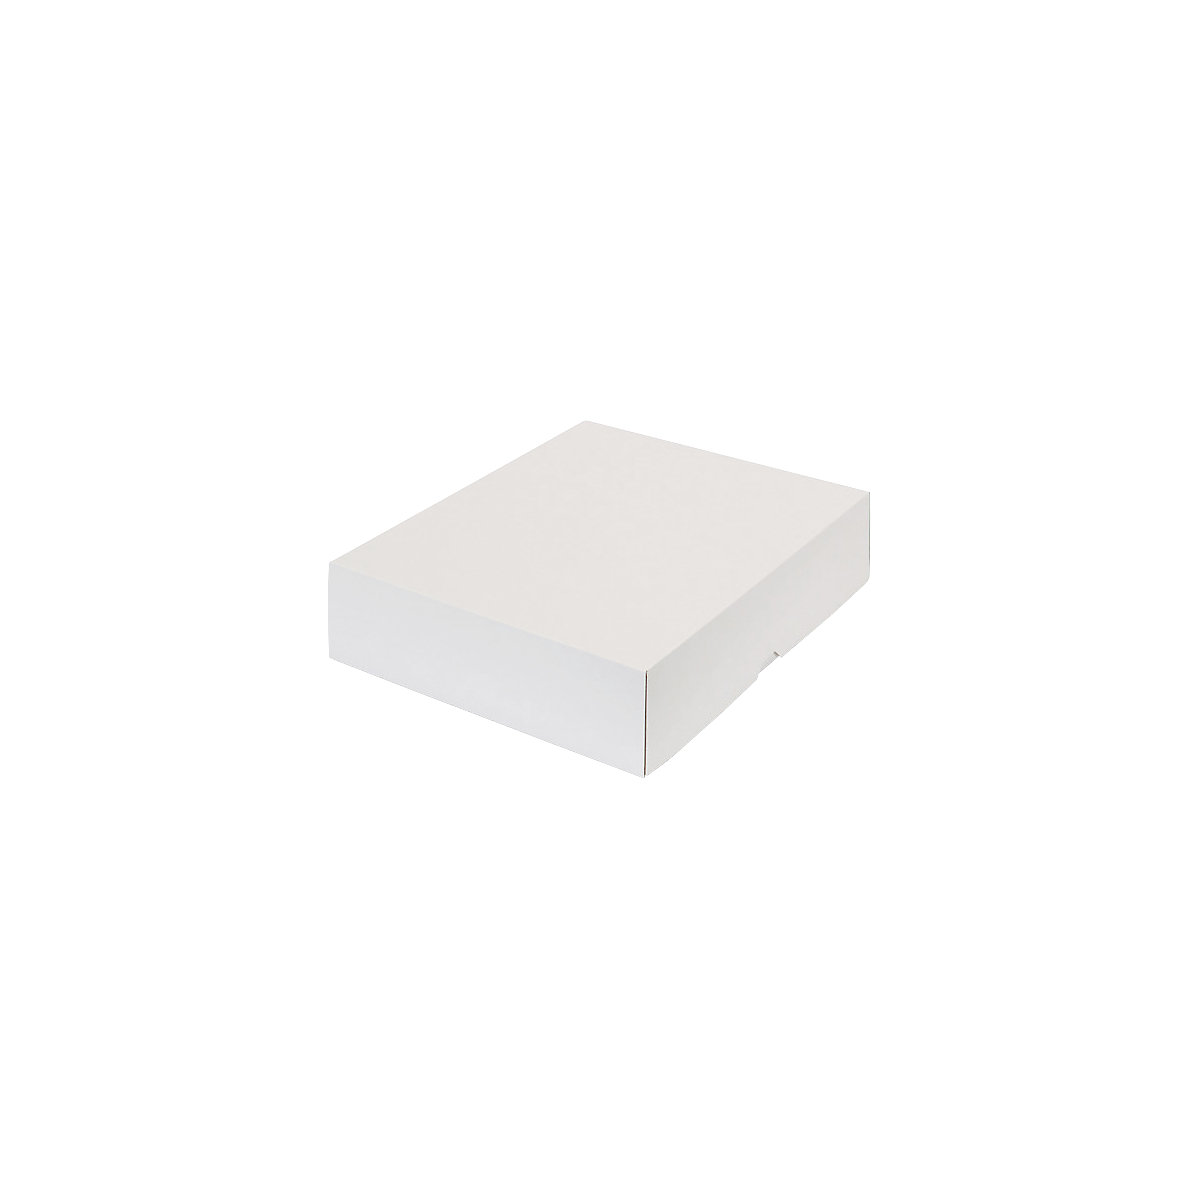 Stülpdeckelkarton, zweiteilig, Innenmaße 355 x 275 x 80 mm, B4, weiß, ab 60 Stk-30